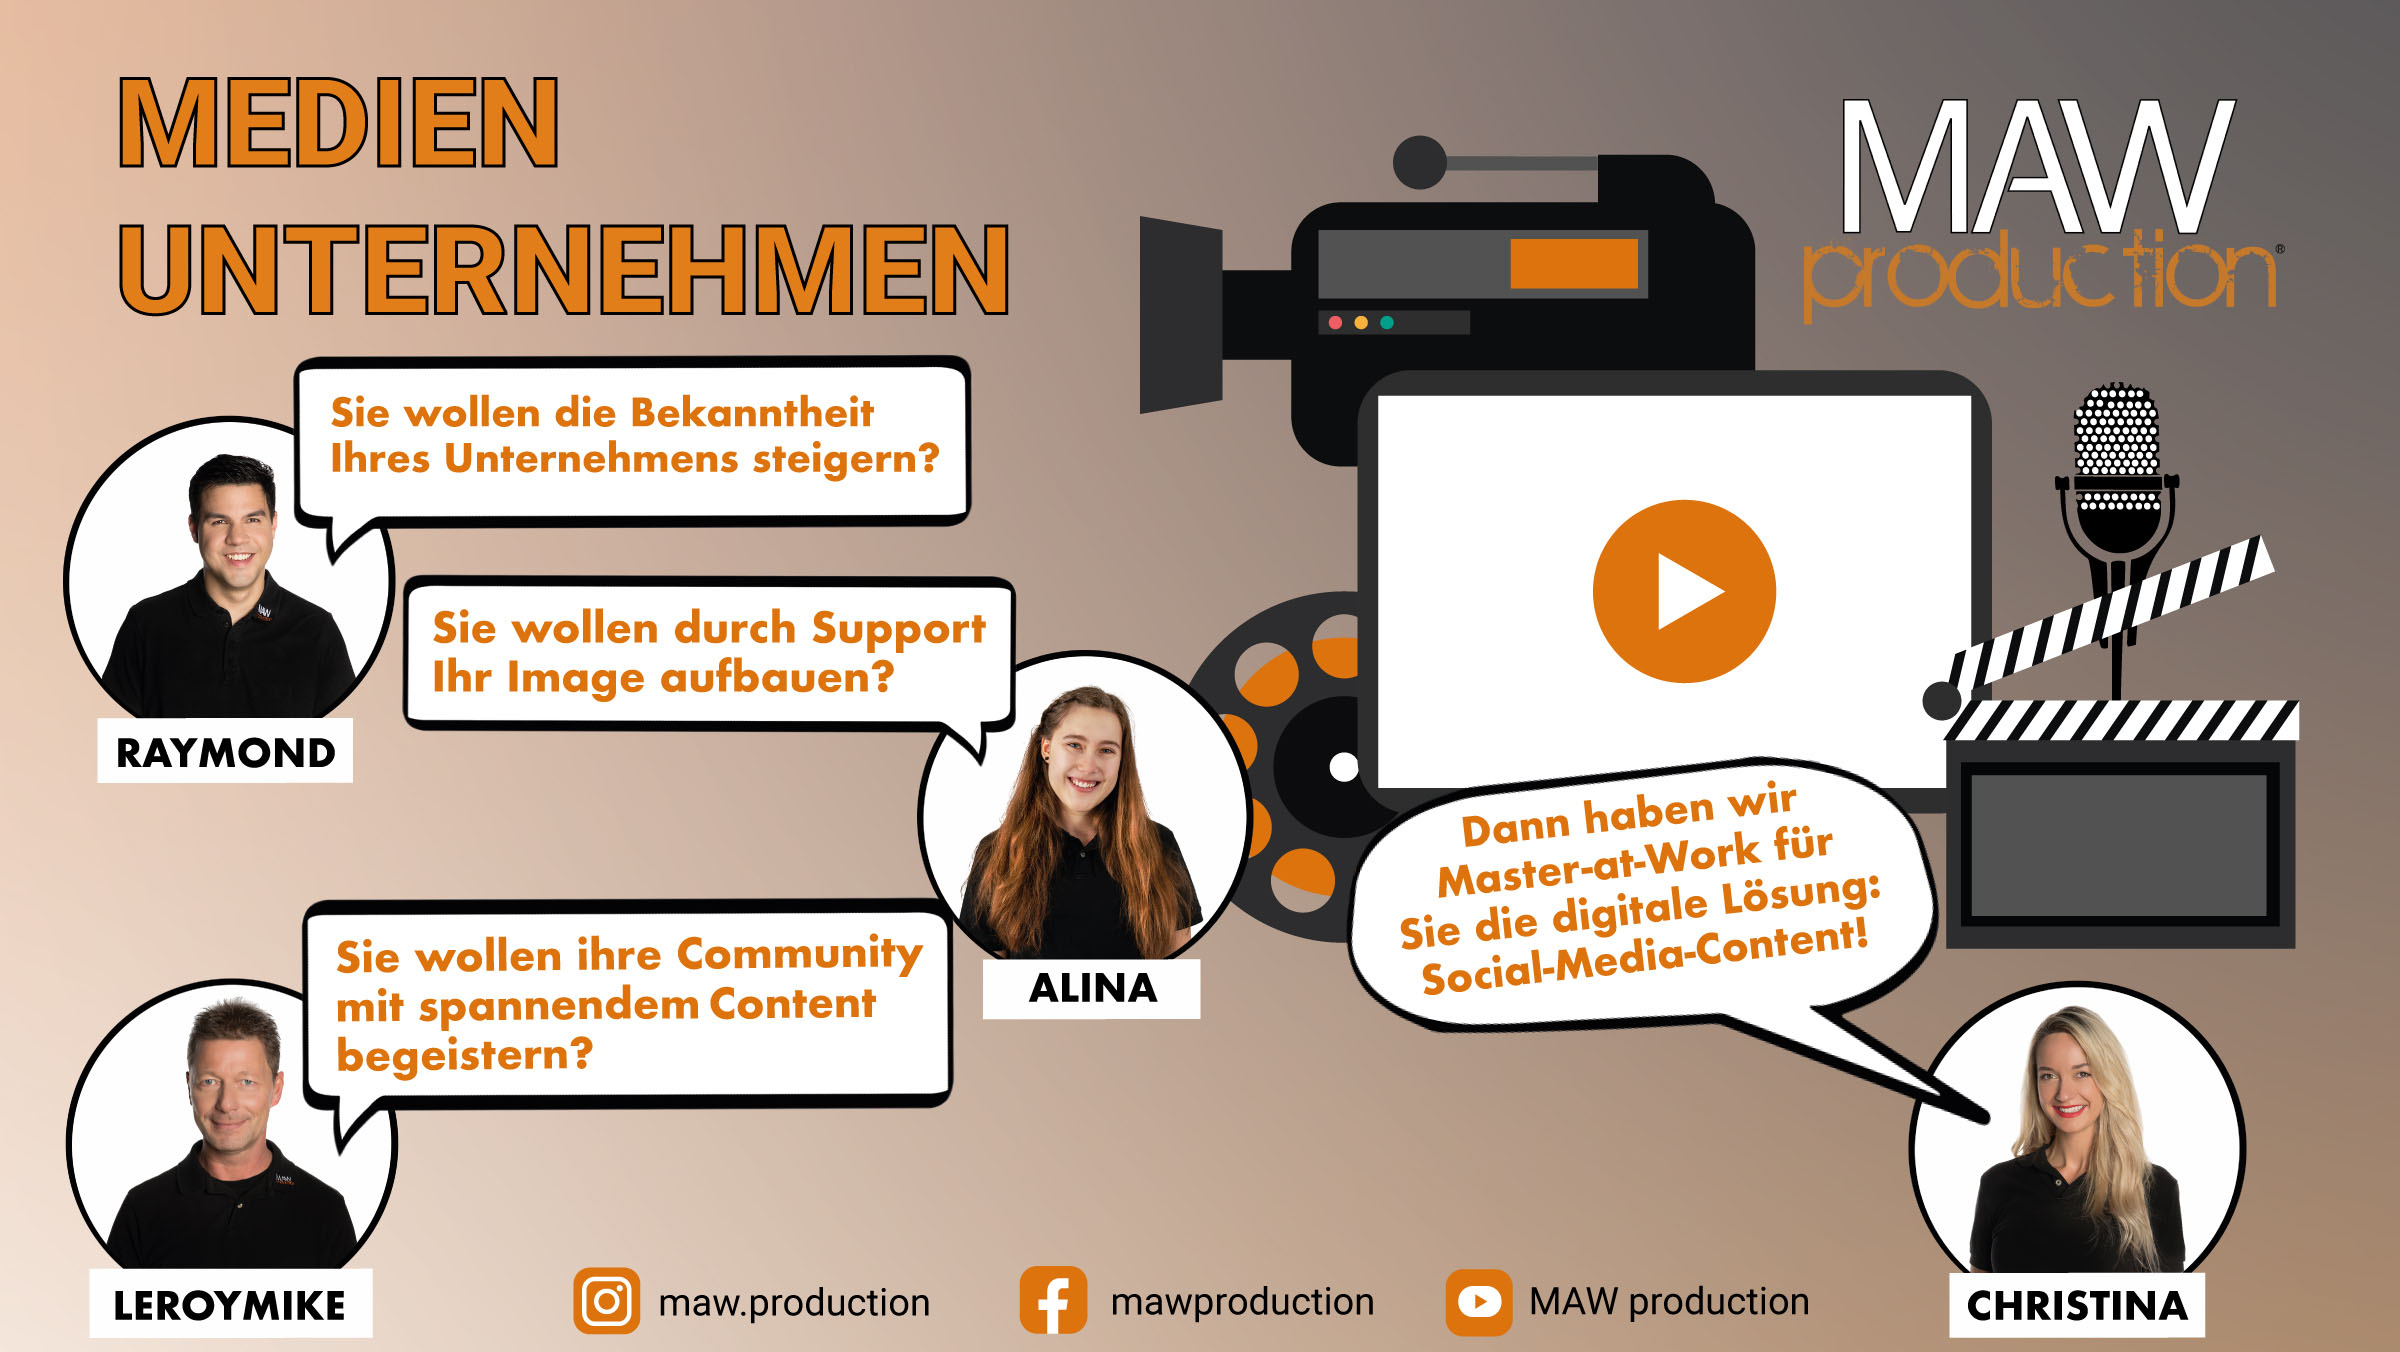 Medien-Unternehmen-Banner-facebook-maw-production